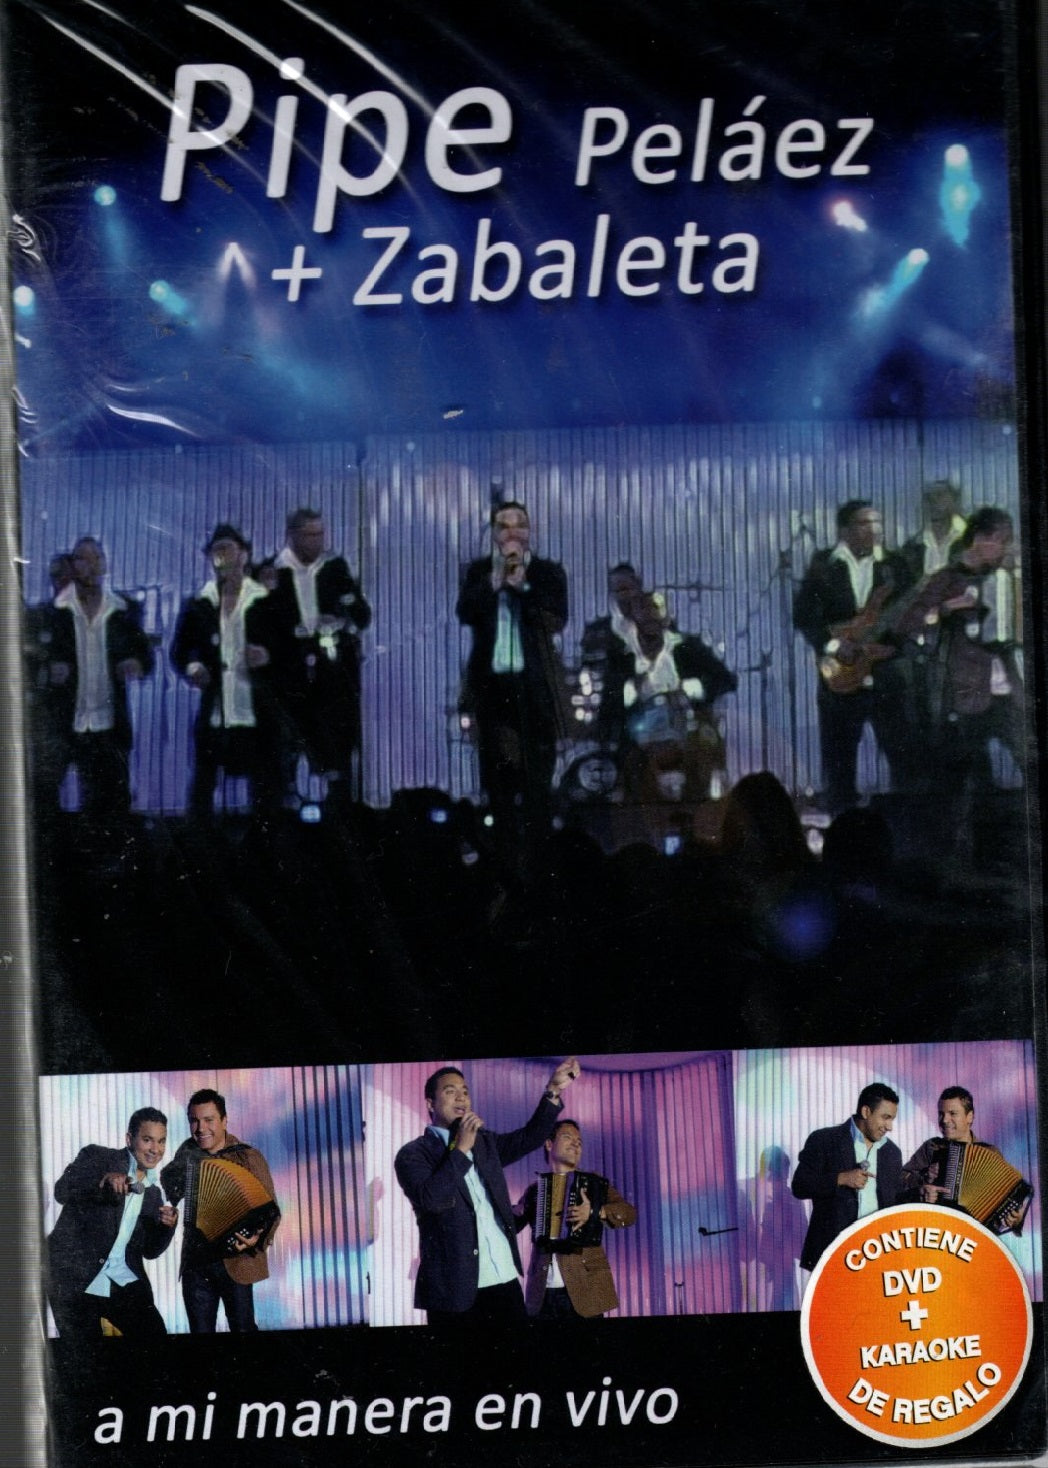 DVD + KAREOKE A mi manera en Vivo- Pipe Peláez + Zabaleta